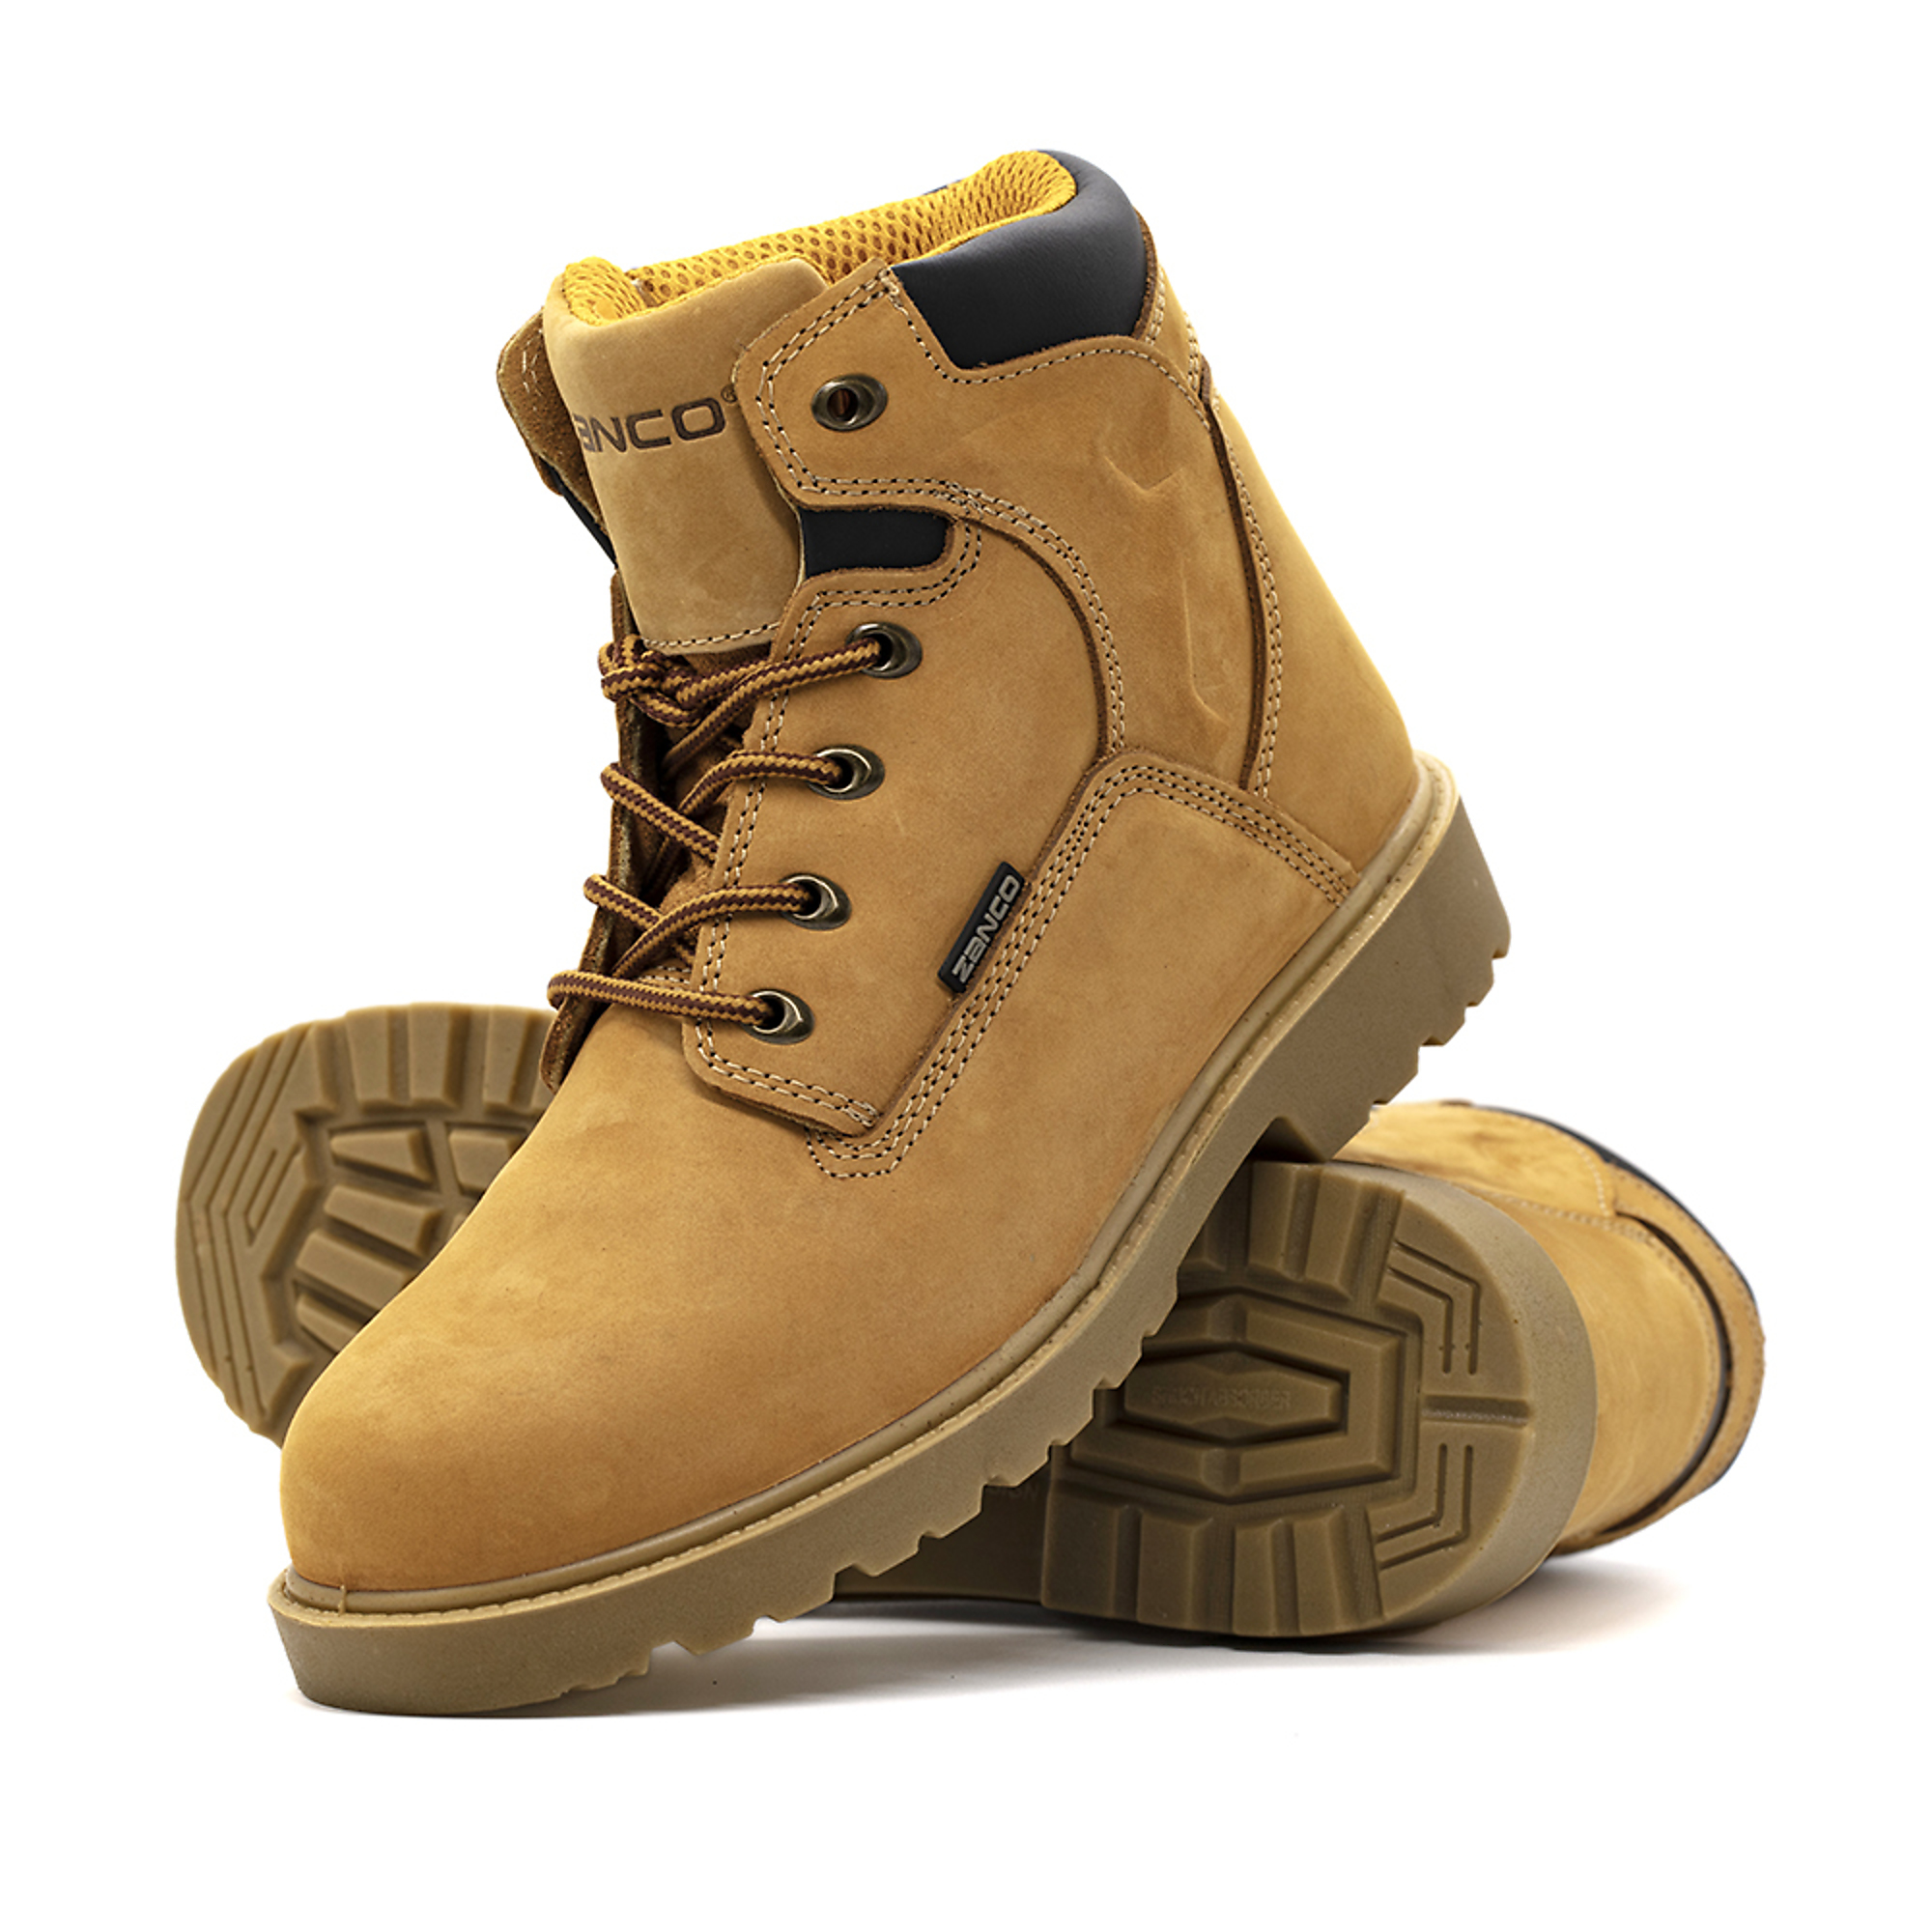 Zanco, Men's Waterproof,Steel toe,EH,Safety boots, Size 8 1/2, Width Medium, Color WHEAT, Model 7681-SE-8.5